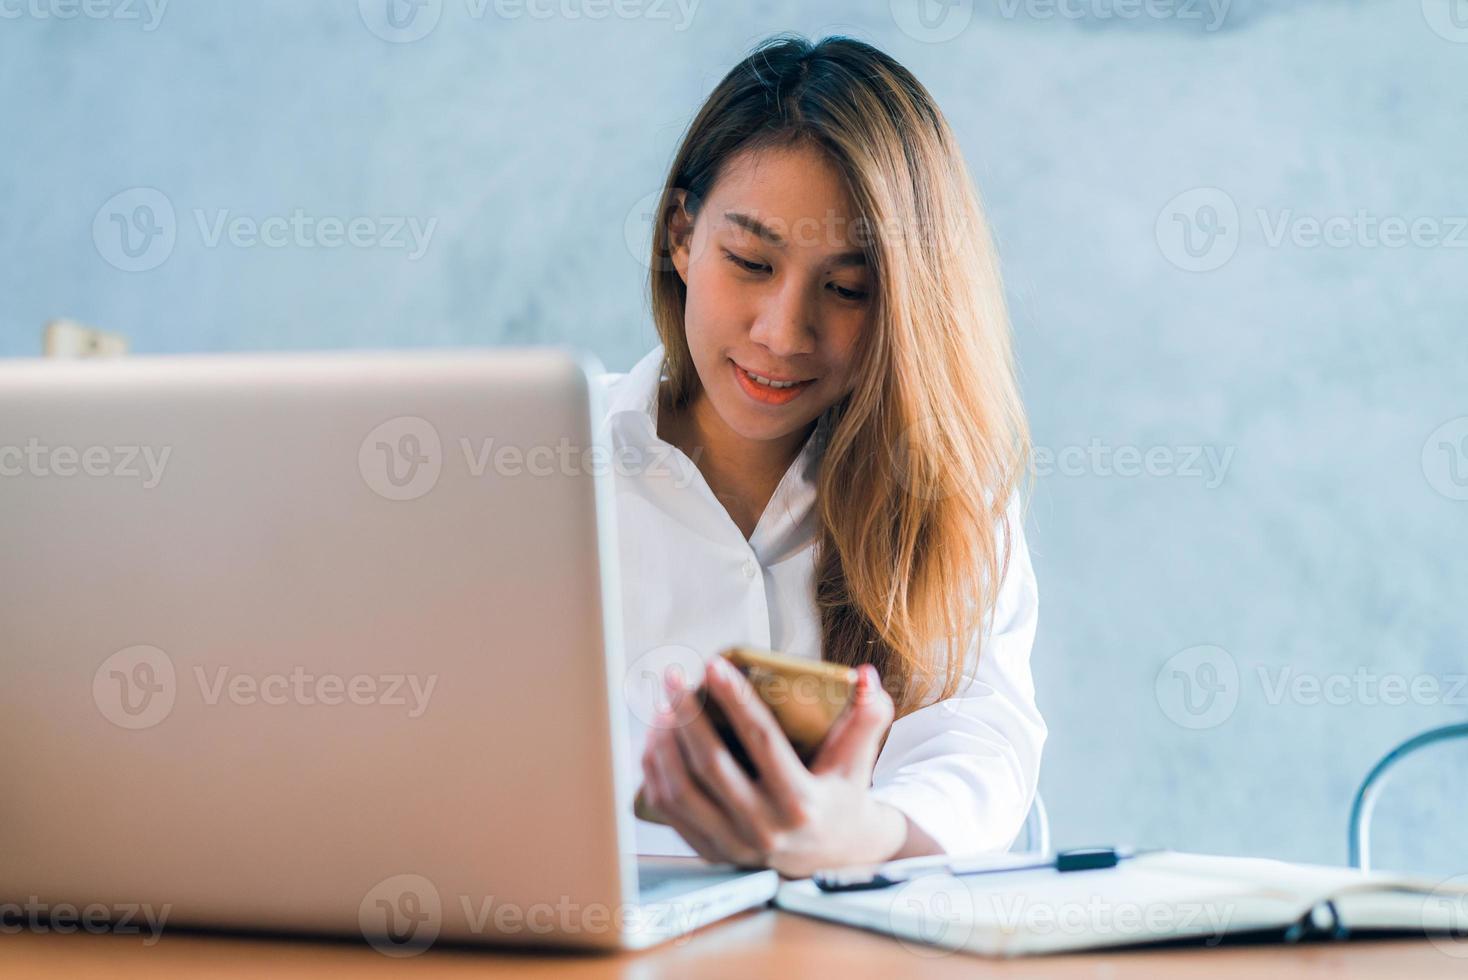 jonge Aziatische vrouw die met de laptop op een bureau werkt met haar glimlach. jonge aziatische vrouw die in het weekend met haar laptop in een warme zonlichtdag werkt. laptop die in het huisconcept werkt. foto